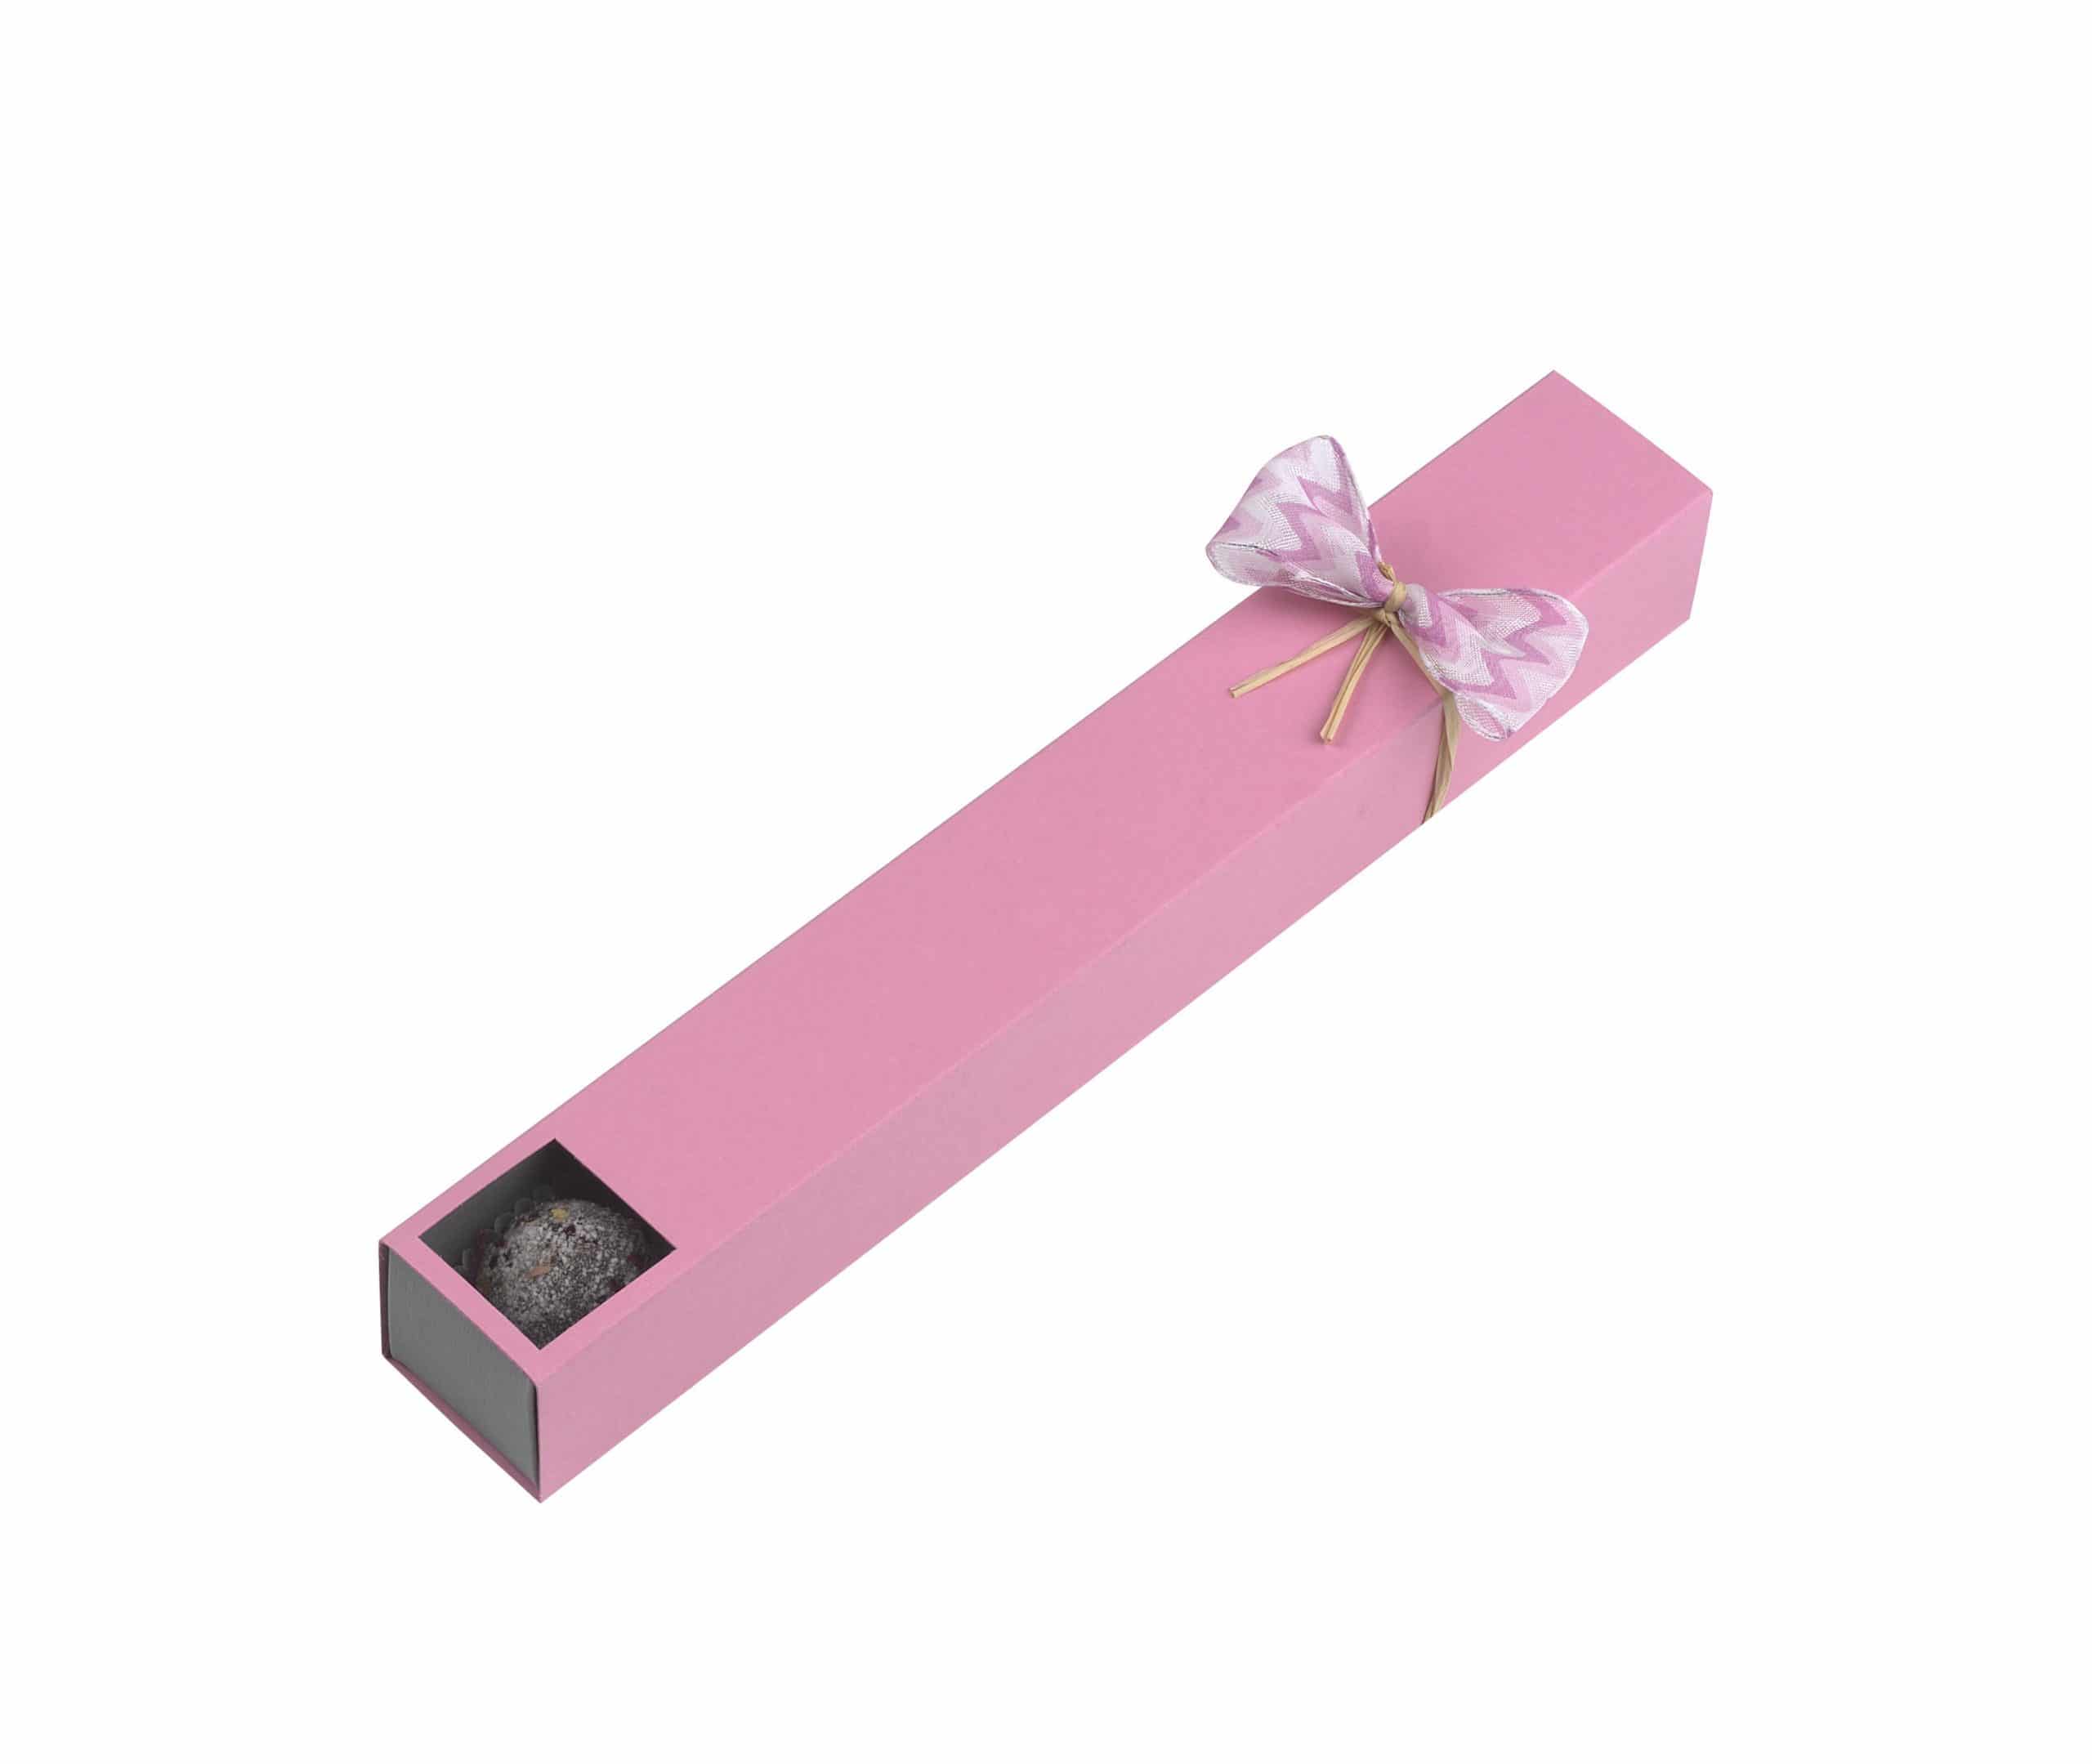 4er Stange "Rosenzauber" von Schell Schokoladen hat eine pinke Hülle mit Sichtfenster und einer pinken Schleife